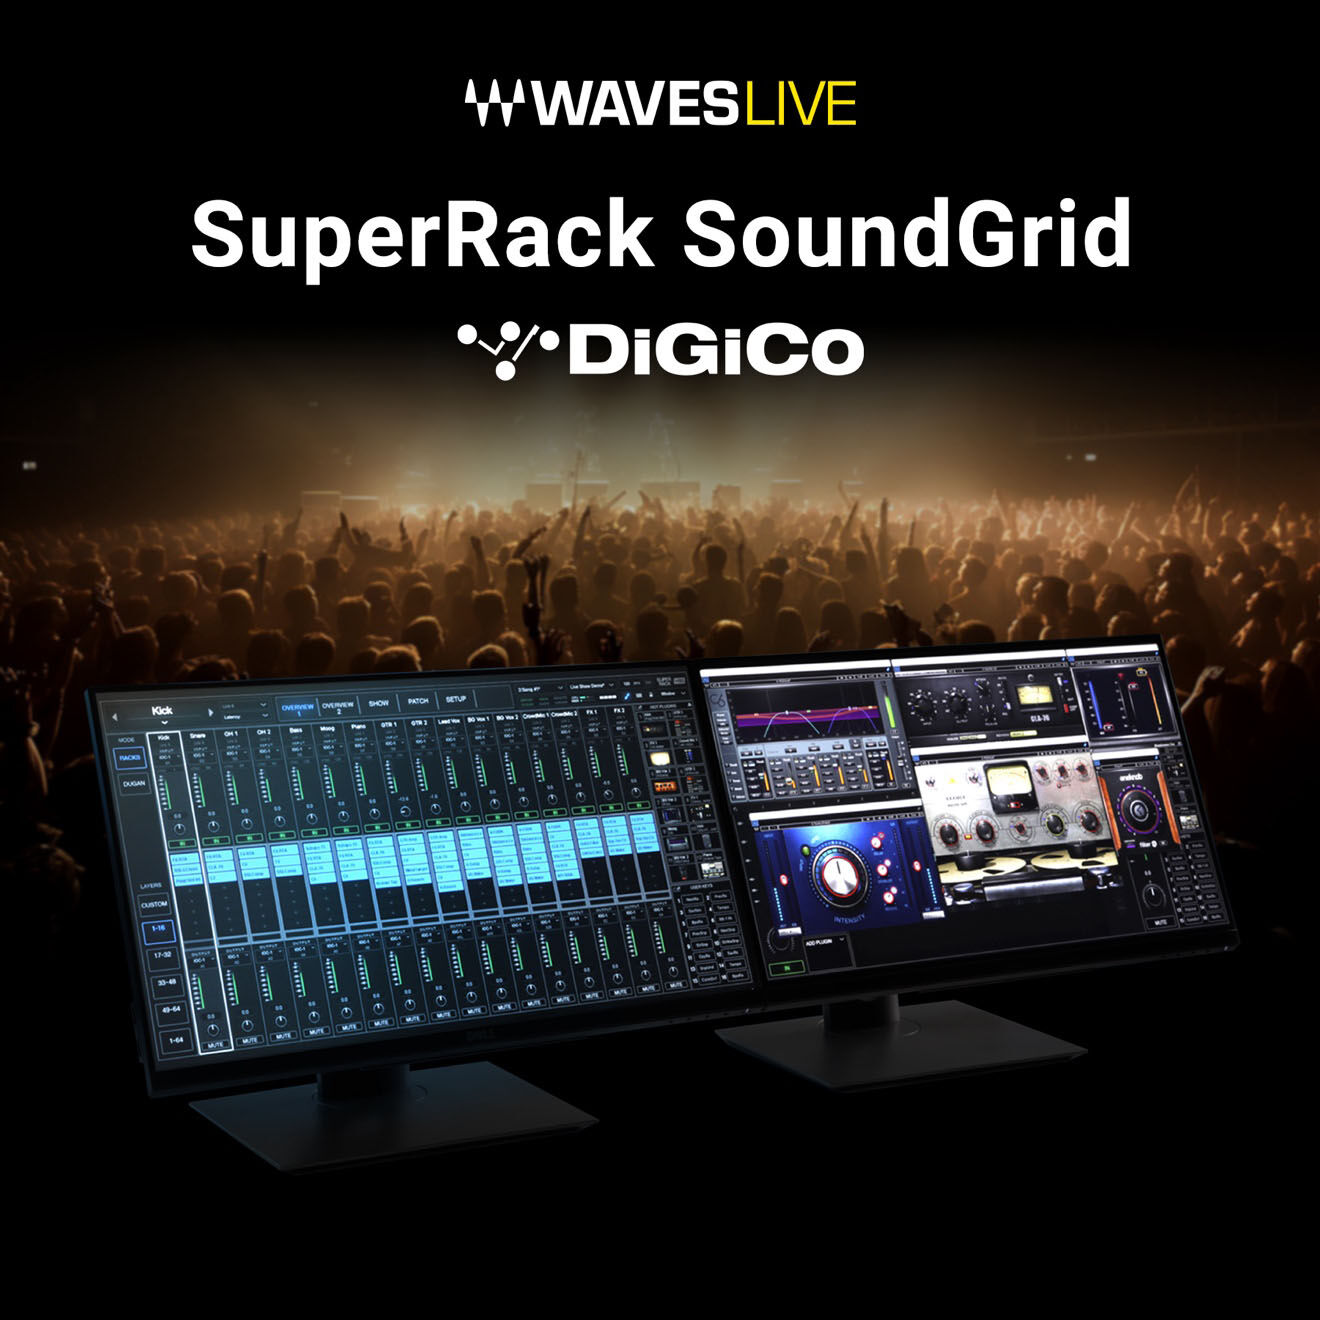 1111316d1713207005-waves-announces-superrack-soundgrid-v14-30-a-waveslive_superr.jpg